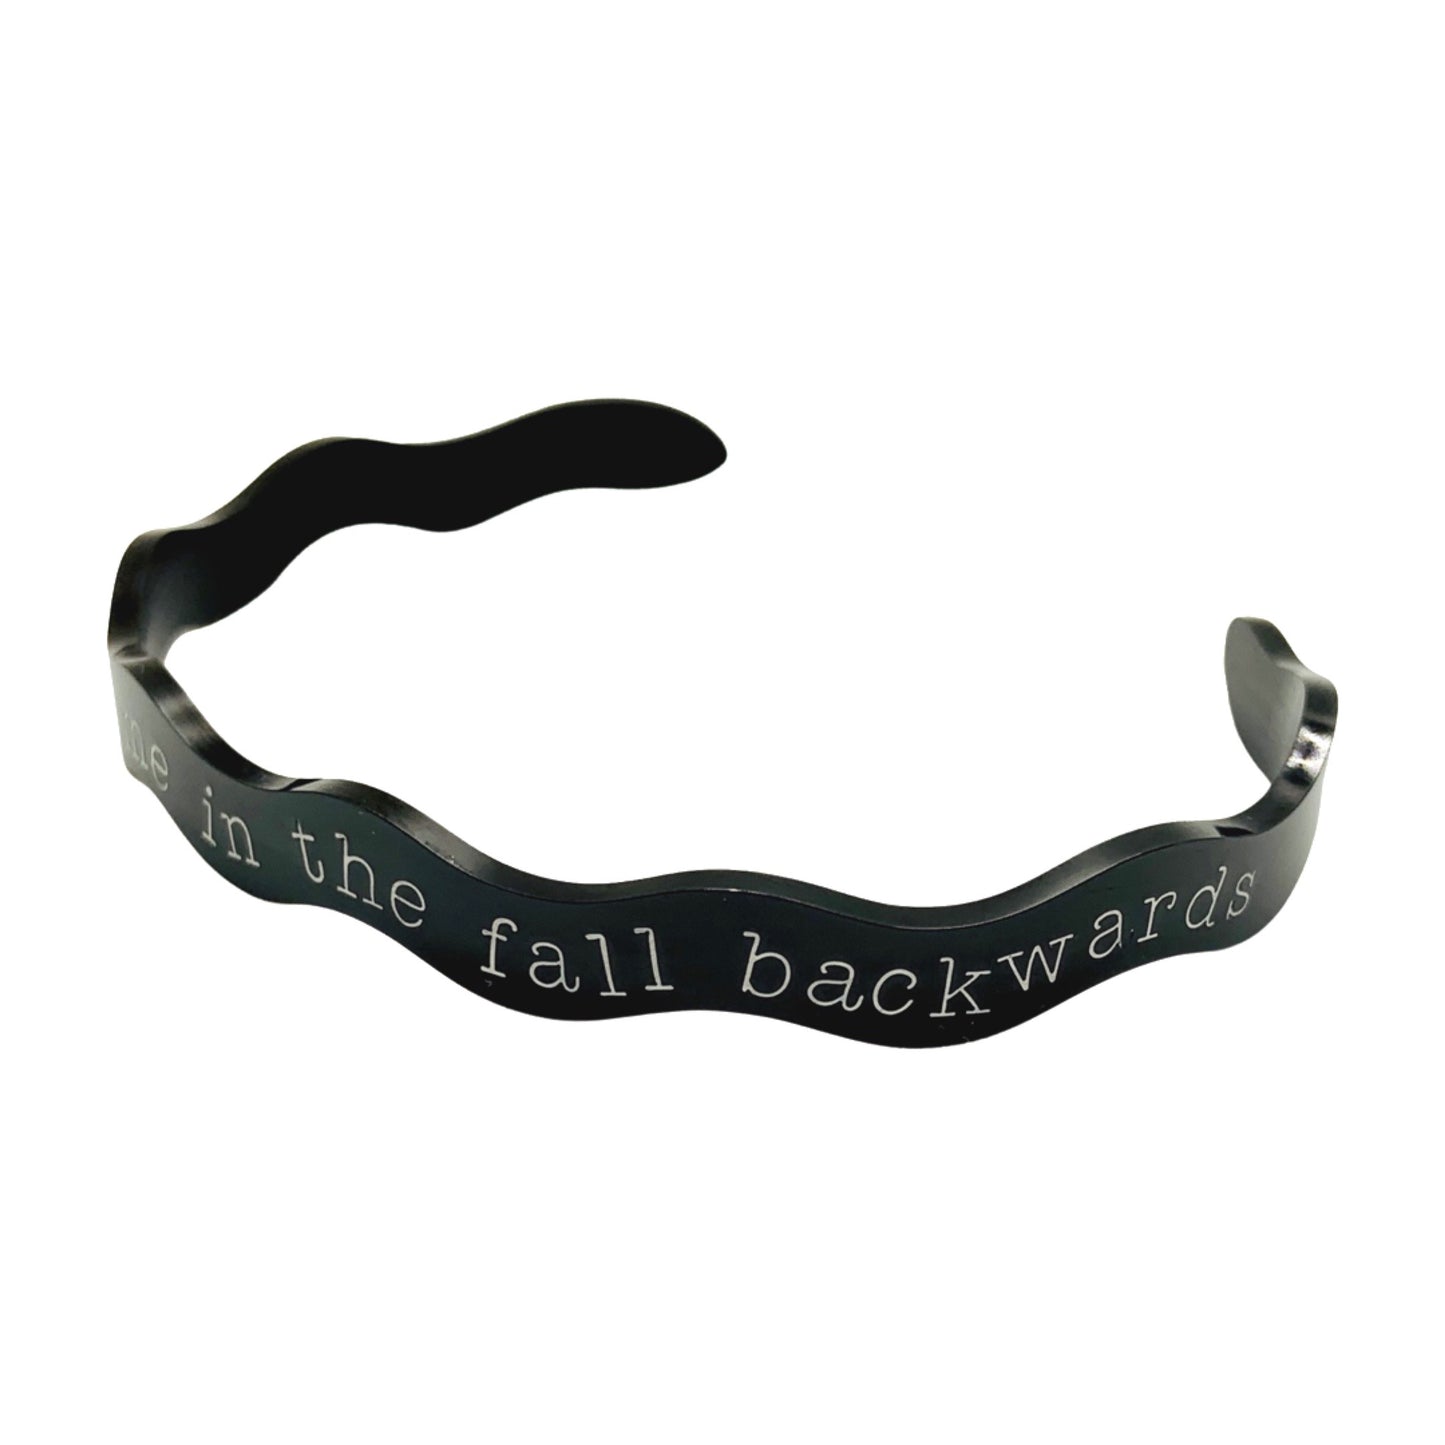 You'll Feel Me in the Fall Backwards (Tarryn Fisher) - Cuff Bracelet